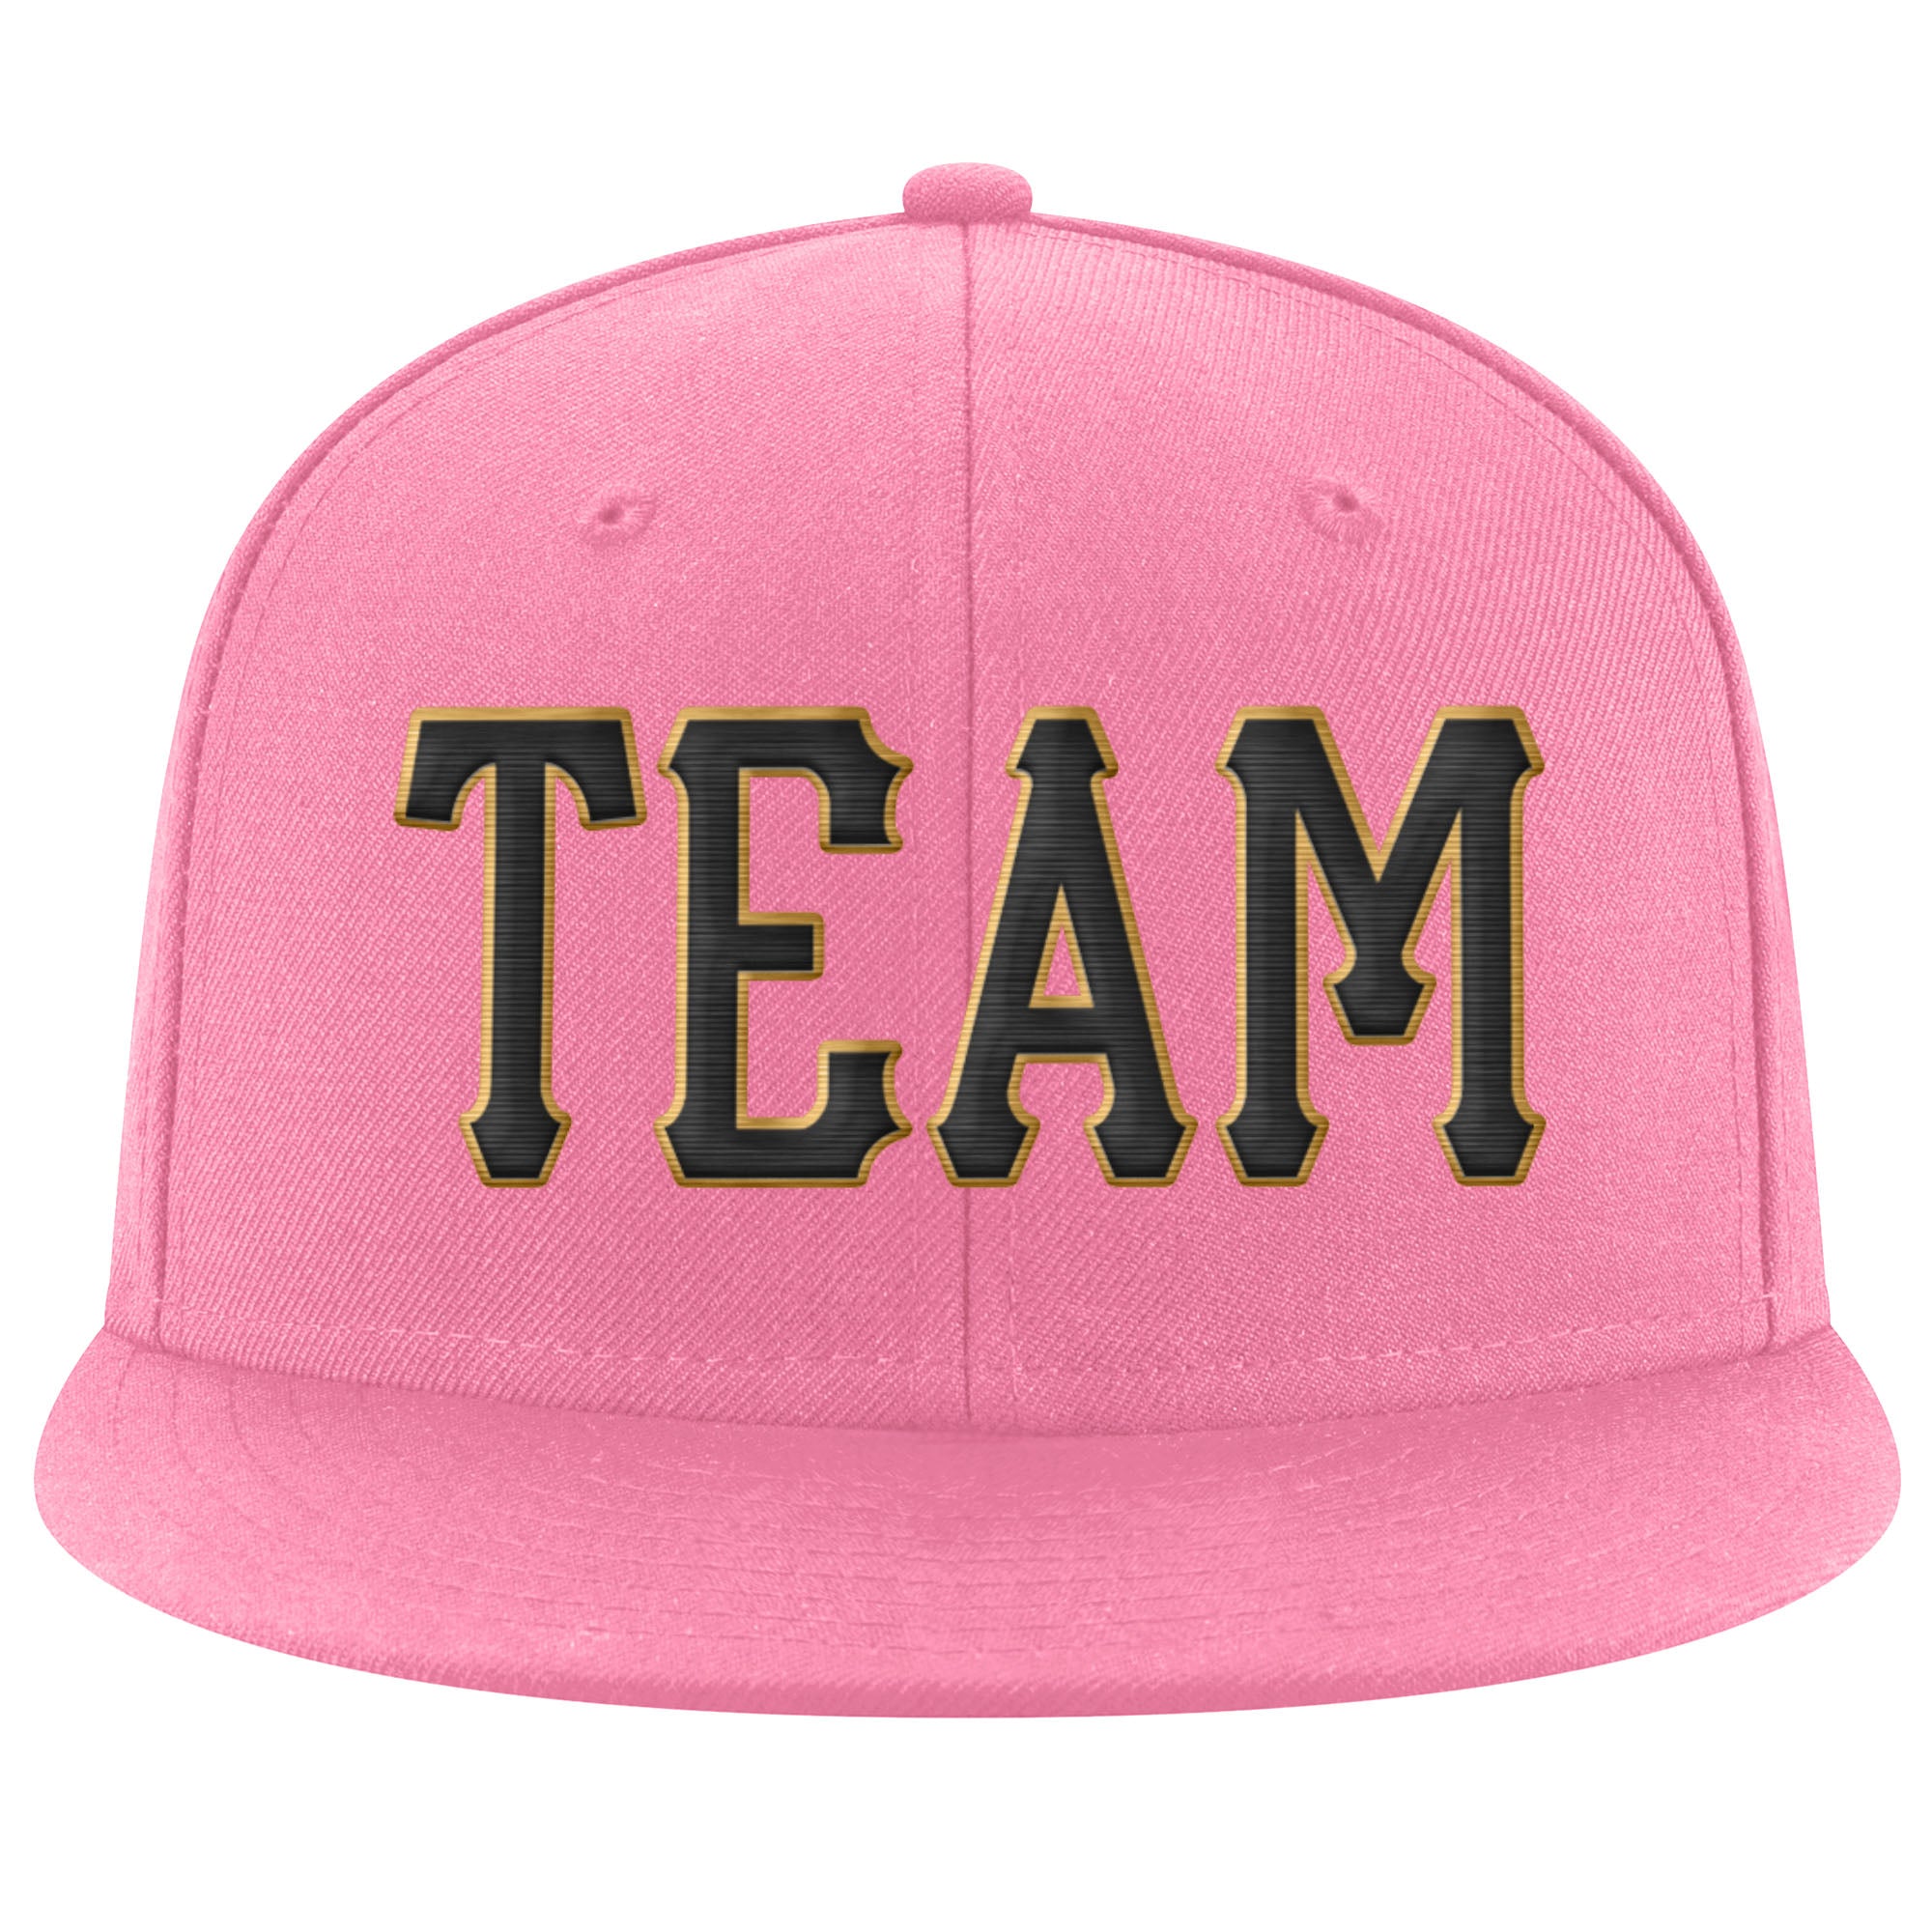 Custom Pink Black-Old Gold Stitched Adjustable Snapback Hat